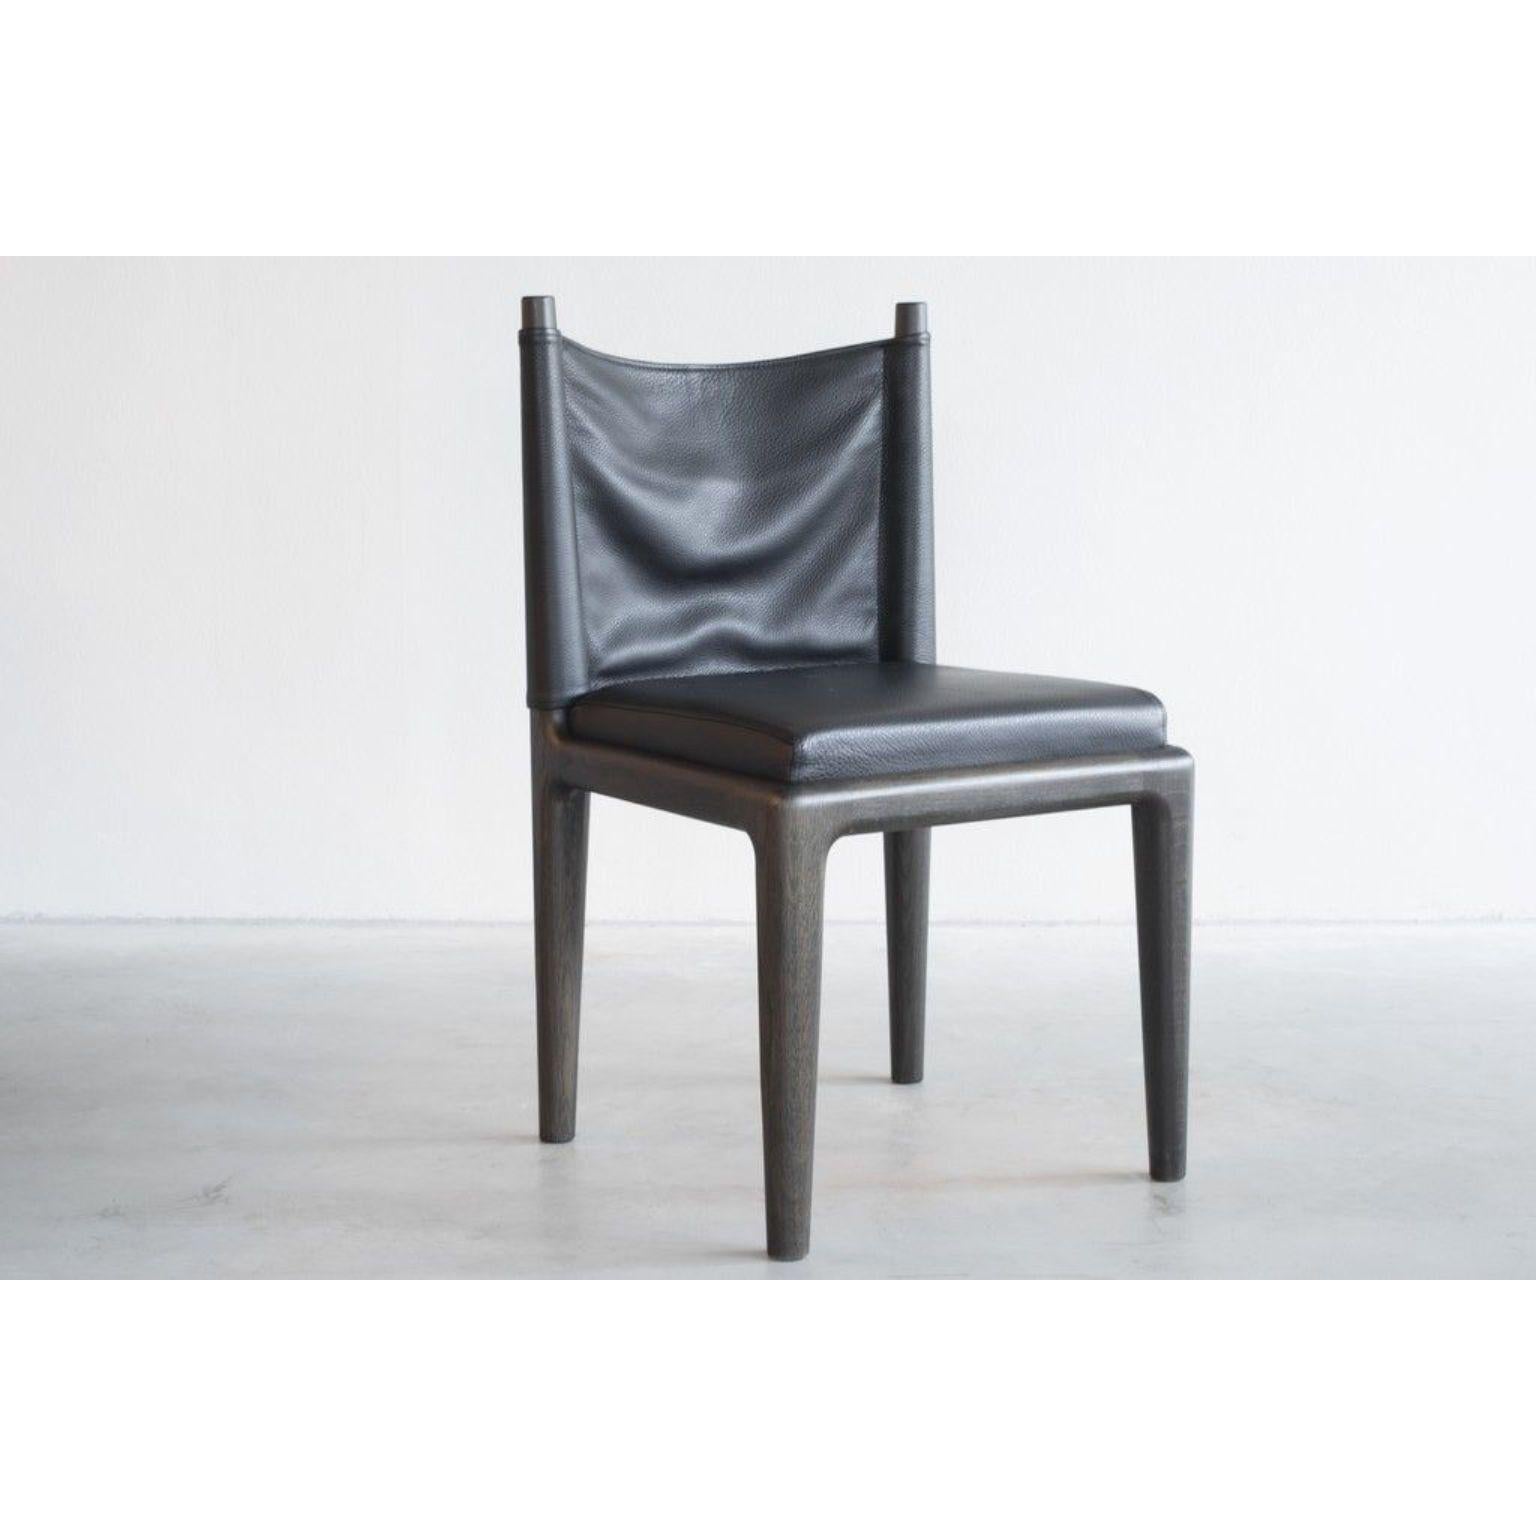 Abi-Stuhl von Van Rossum
Abmessungen: T45 x B45 x H81 cm
MATERIALIEN: Eiche, Leder.

Das Holz ist in allen Van-Rossum-Standardfarben oder in einer auf das Kundenmuster abgestimmten Ausführung erhältlich.
Wählen Sie aus unseren Lederfarben, oder